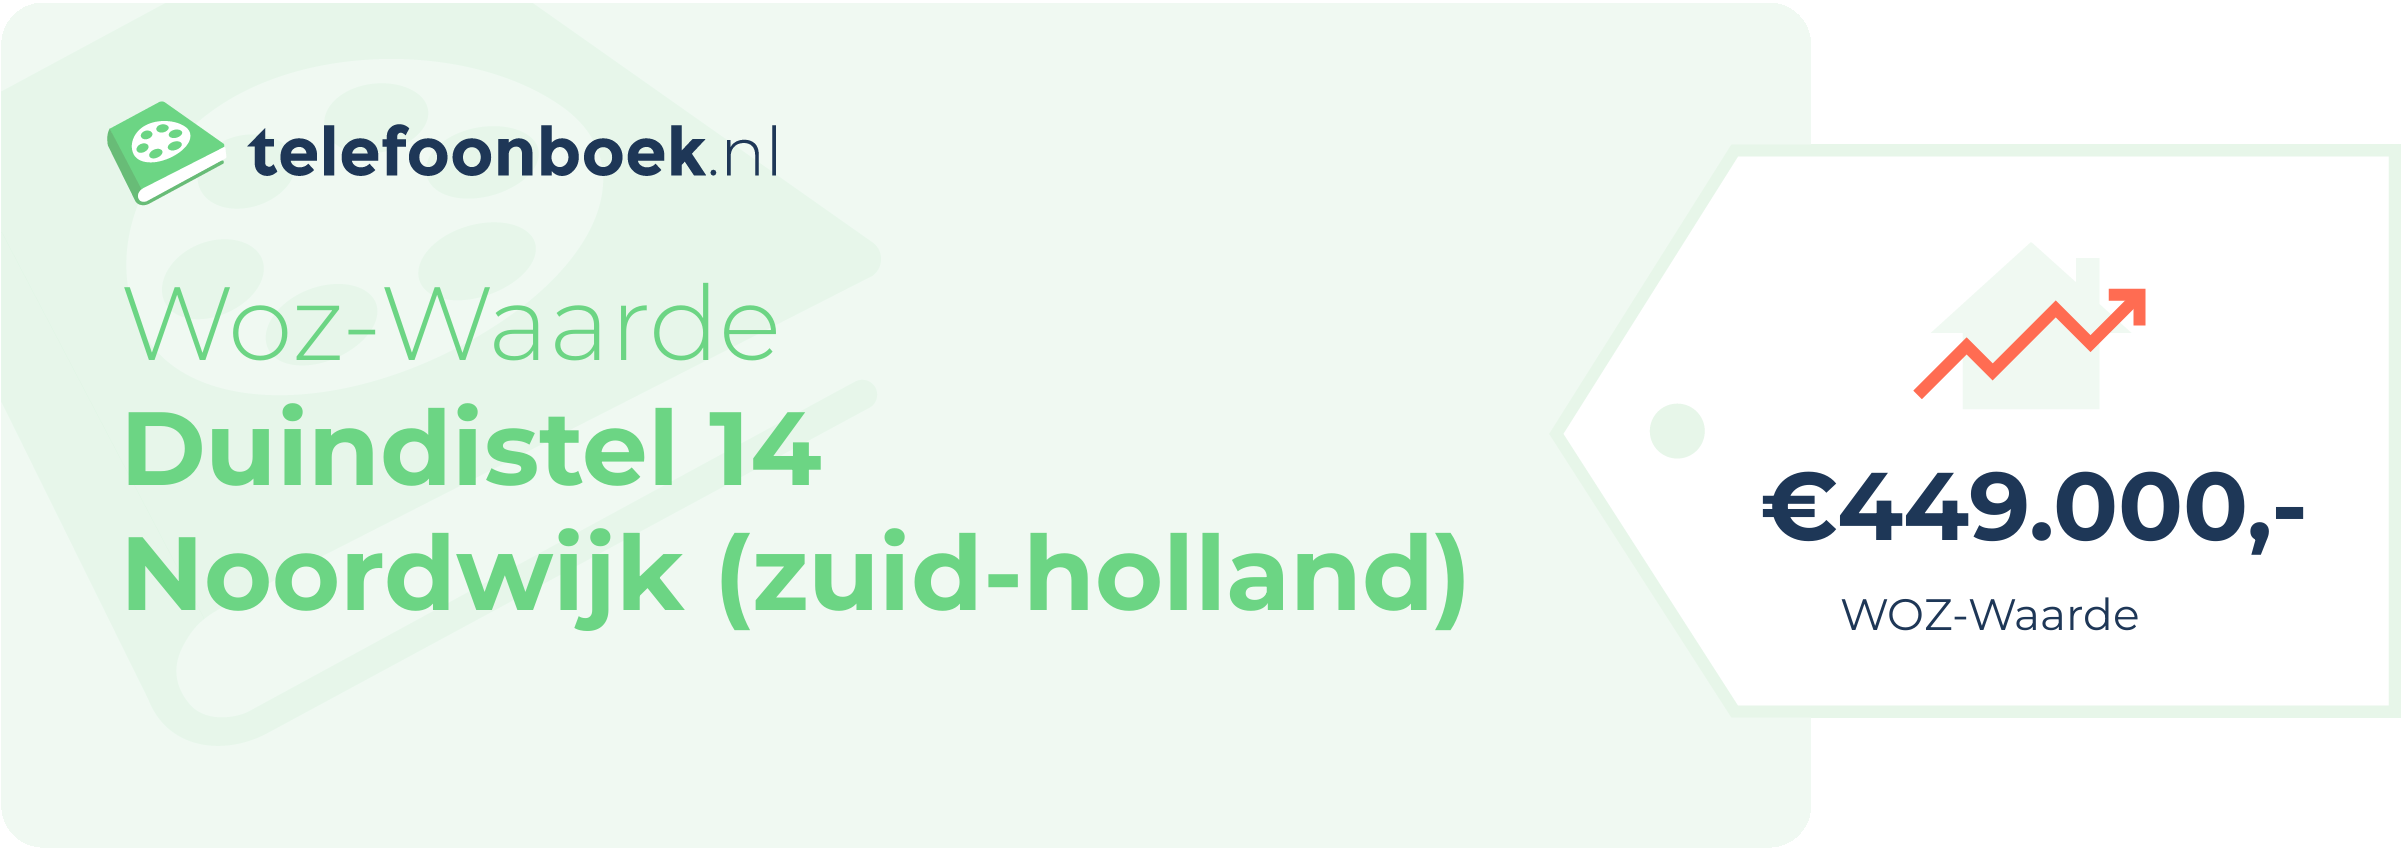 WOZ-waarde Duindistel 14 Noordwijk (Zuid-Holland)